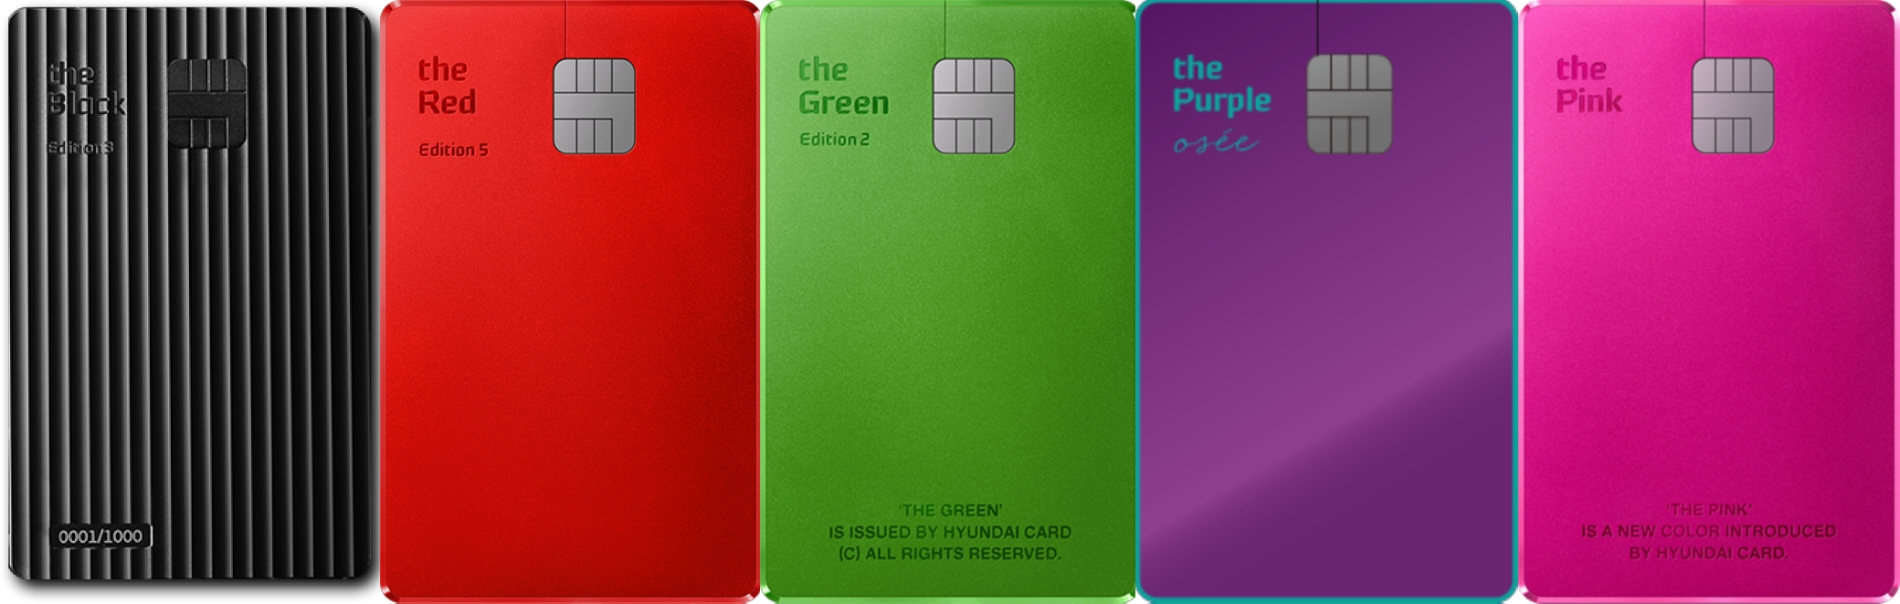 현대카드의 컬러 프리미엄 카드 라인업. 사진 왼쪽부터 ‘the Black(더 블랙)’, ‘the Red(더 레드)’, ‘the Green(더 그린)’, ‘the Purple(더 퍼플)’, ‘the Pink(더 핑크)’. /사진제공=현대카드